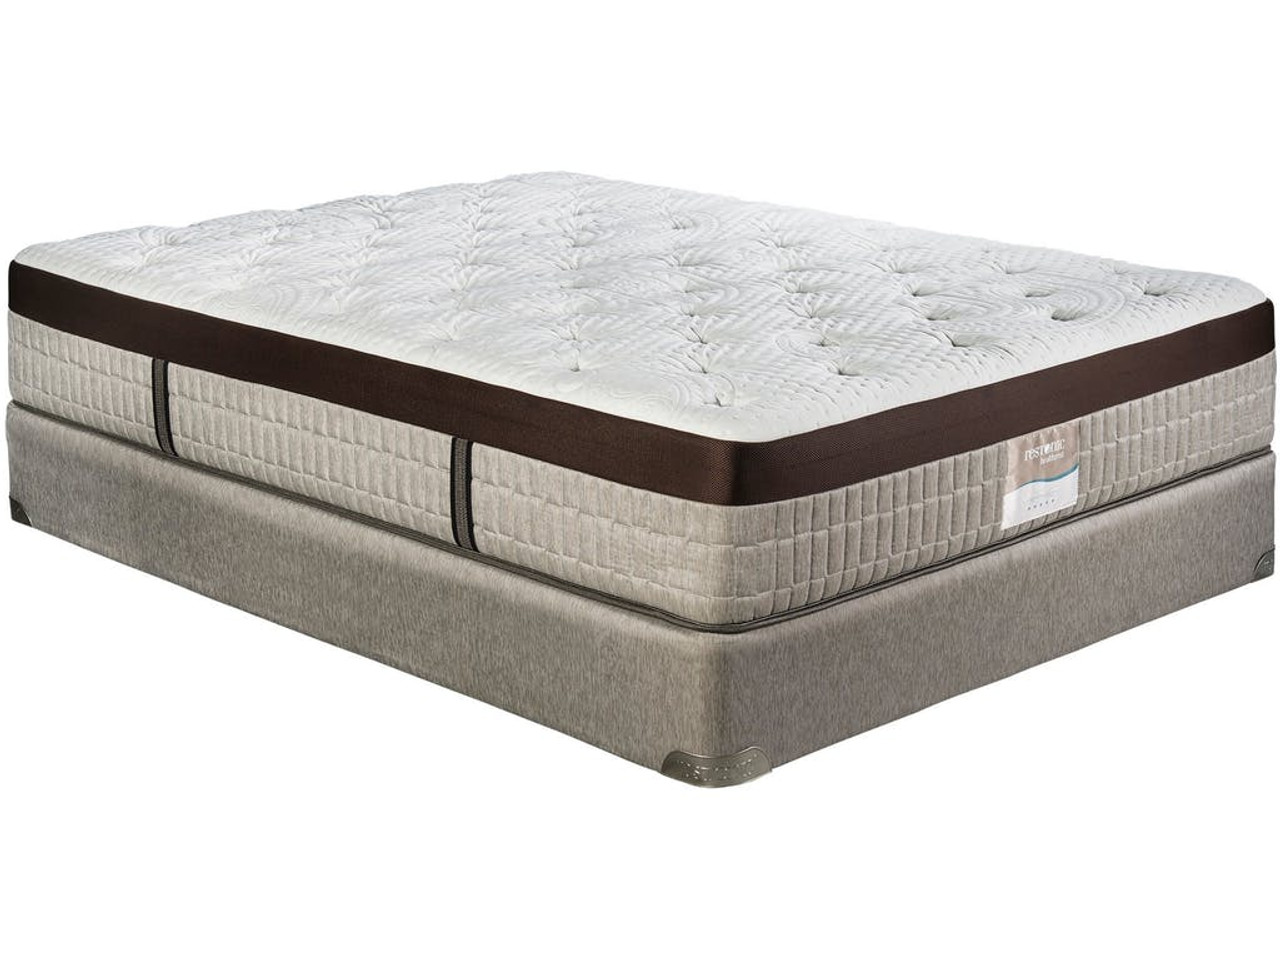 king latex mattress topper canada